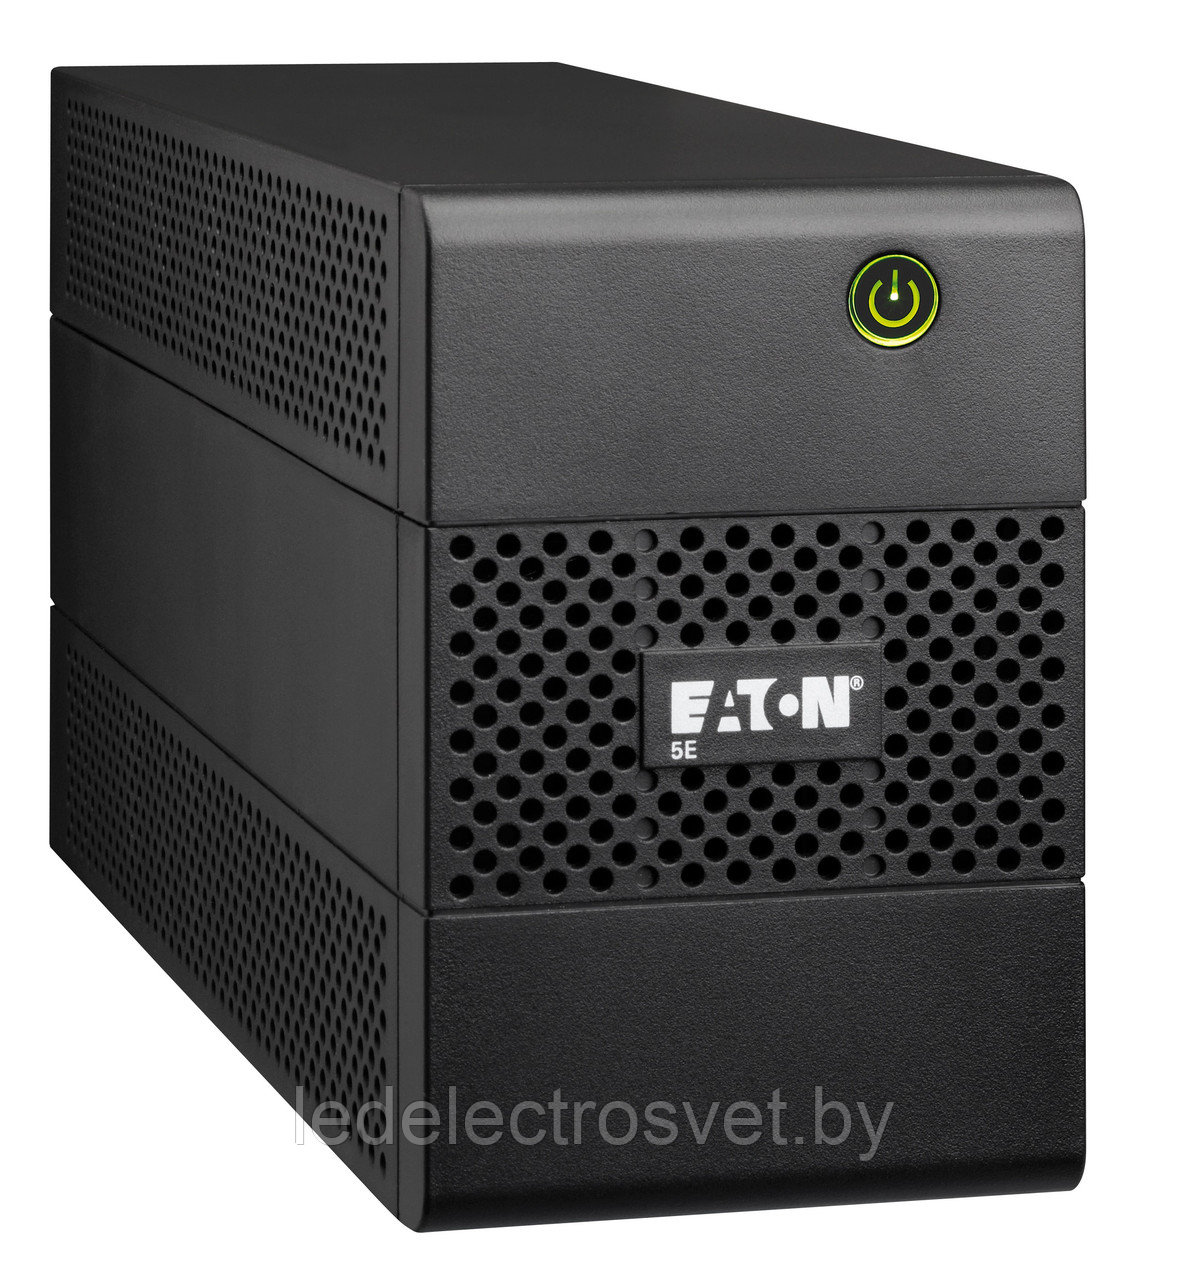 ИБП Eaton 5E 650i DIN (650ВА, 360Вт, 1 евророзетка + 2 розетки IEC C13)